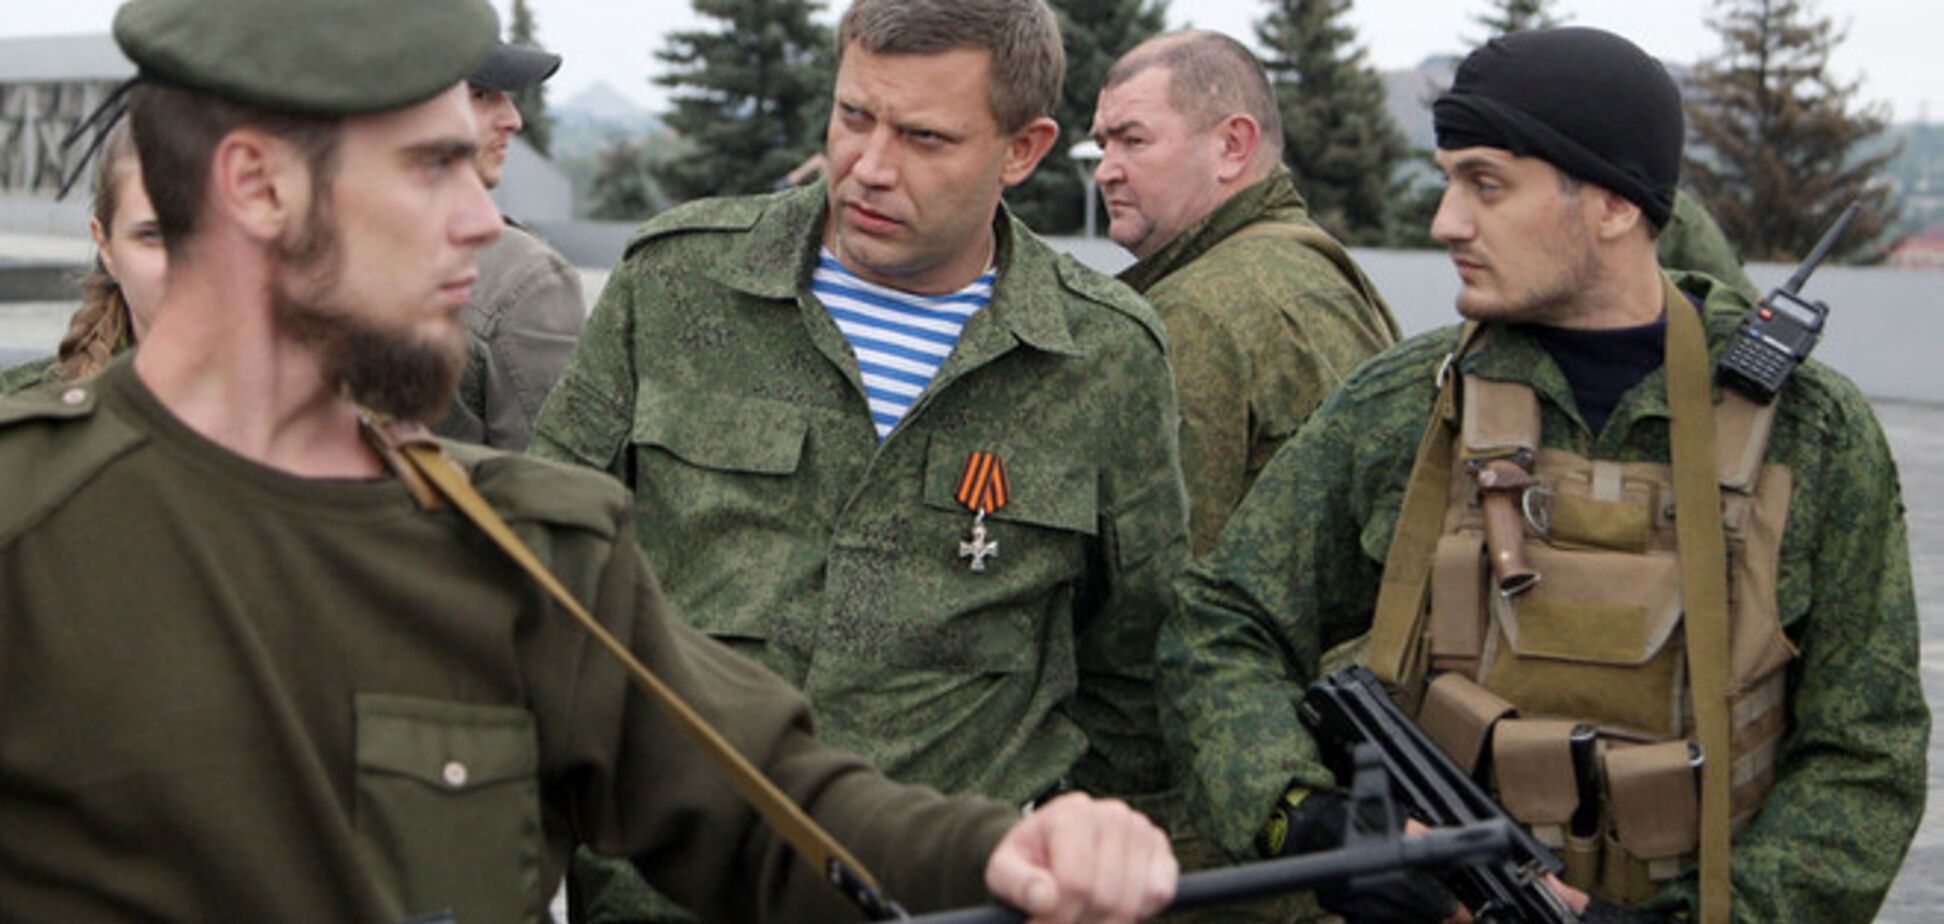 МВД Украины готово доказать, что члены 'ДНР' - террористы: найдены необходимые улики